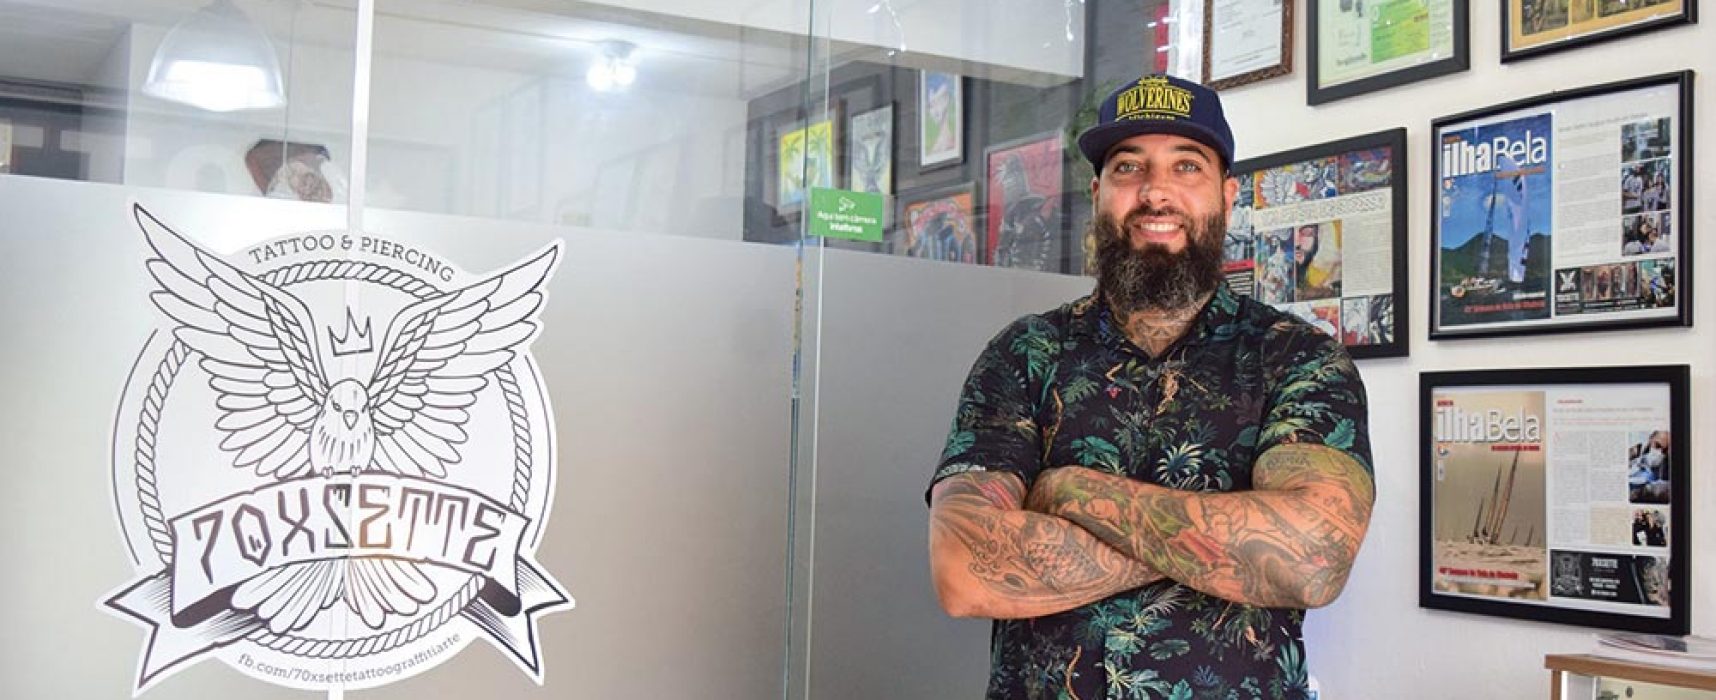 70XSette – um novo conceito de tattoo Studio em Ilhabela